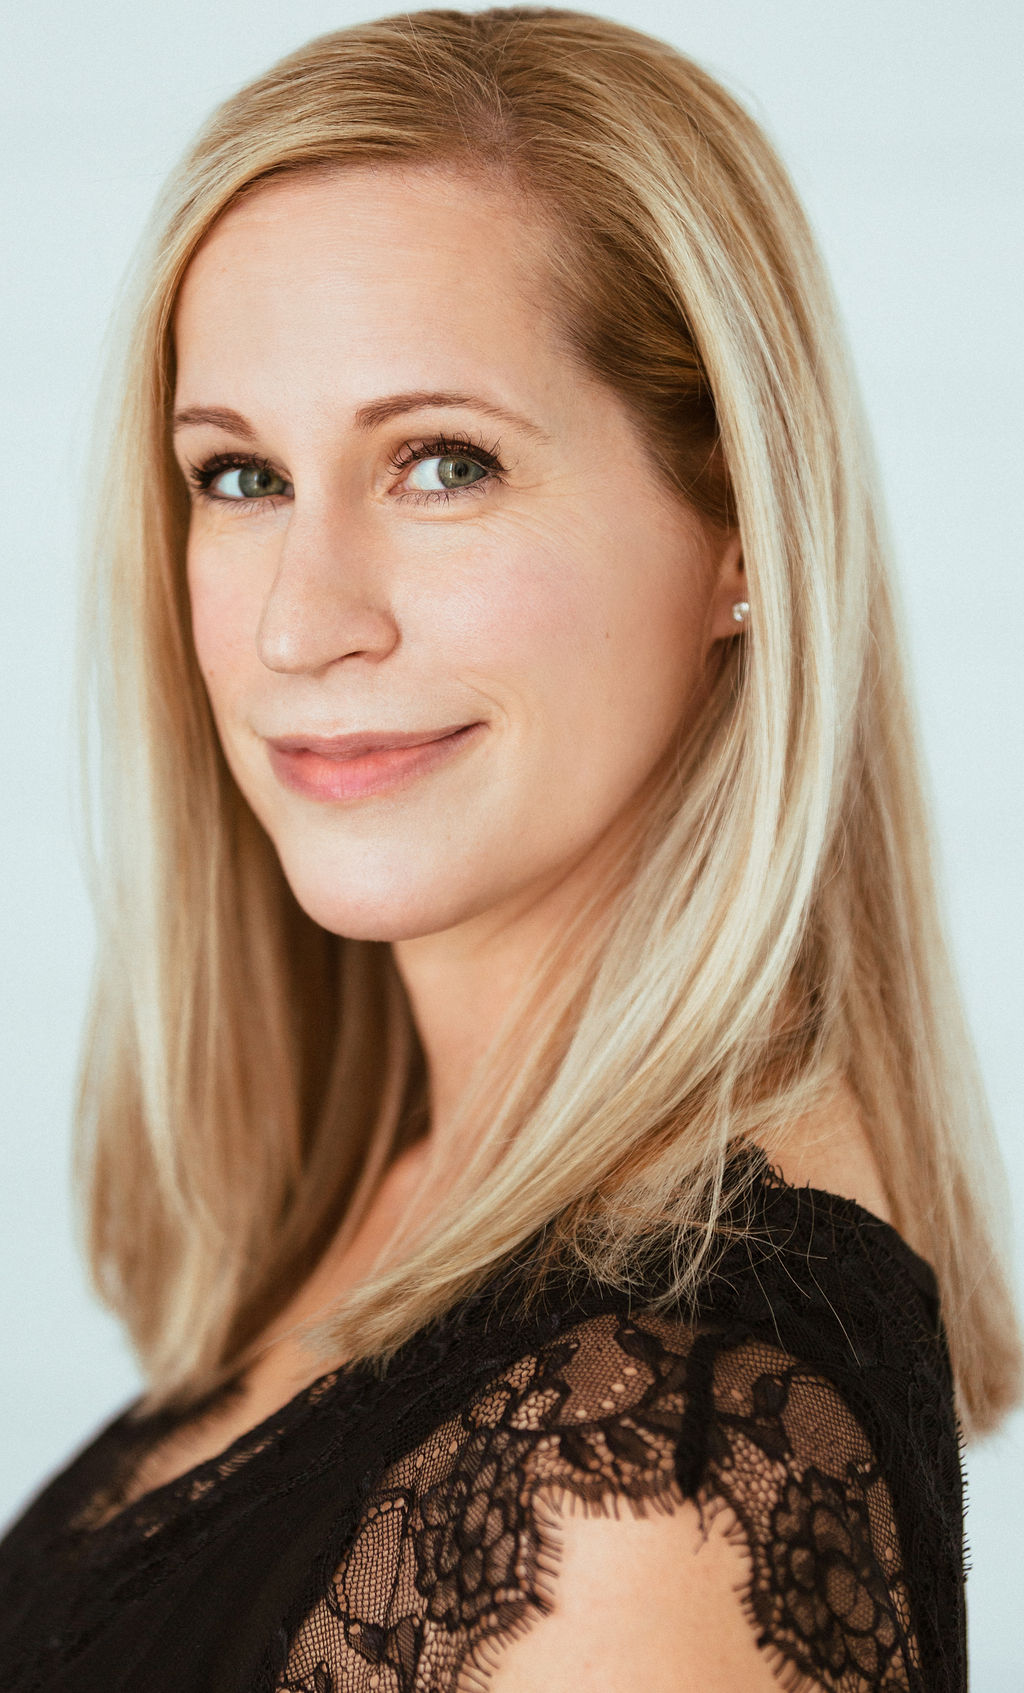 Professional Voice Actor Heather Dietz